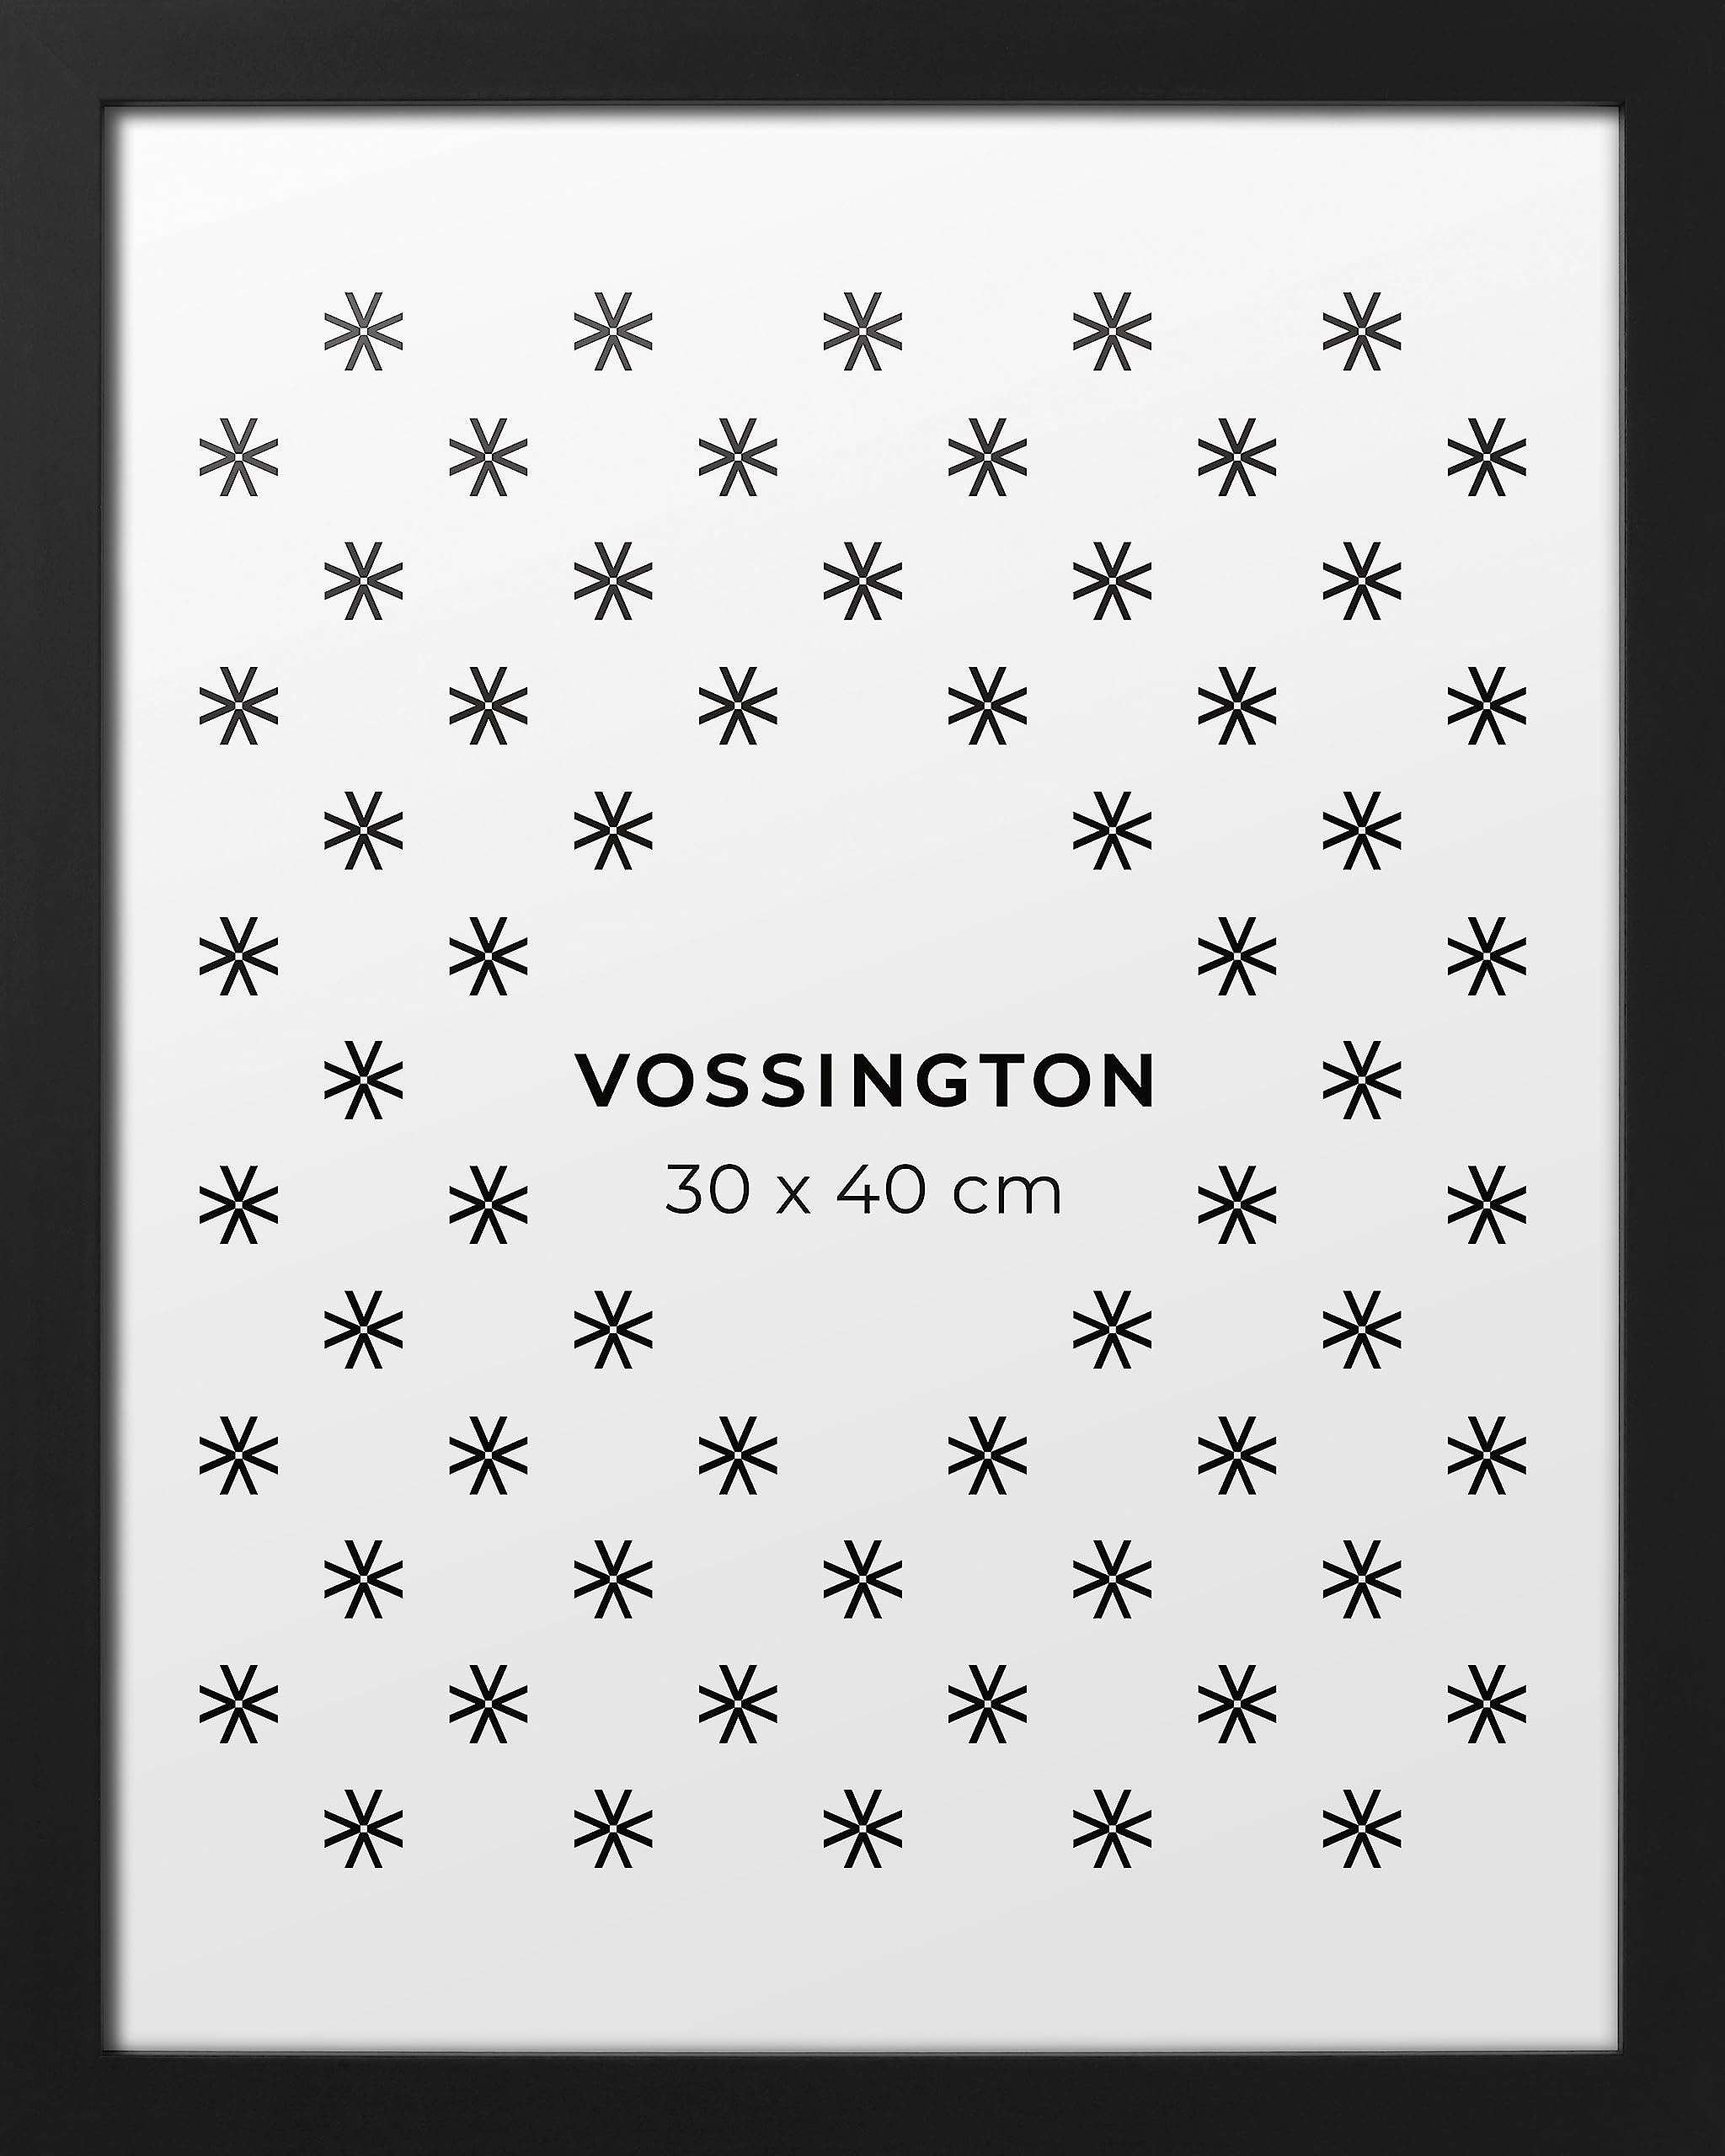 Vossington Bilderrahmen 30x40 Schwarz - Modernes, klassisches Design - Rahmen für 1 Bild, Foto, Poster oder Puzzle im Format 30 x 40 cm (40x30 cm)